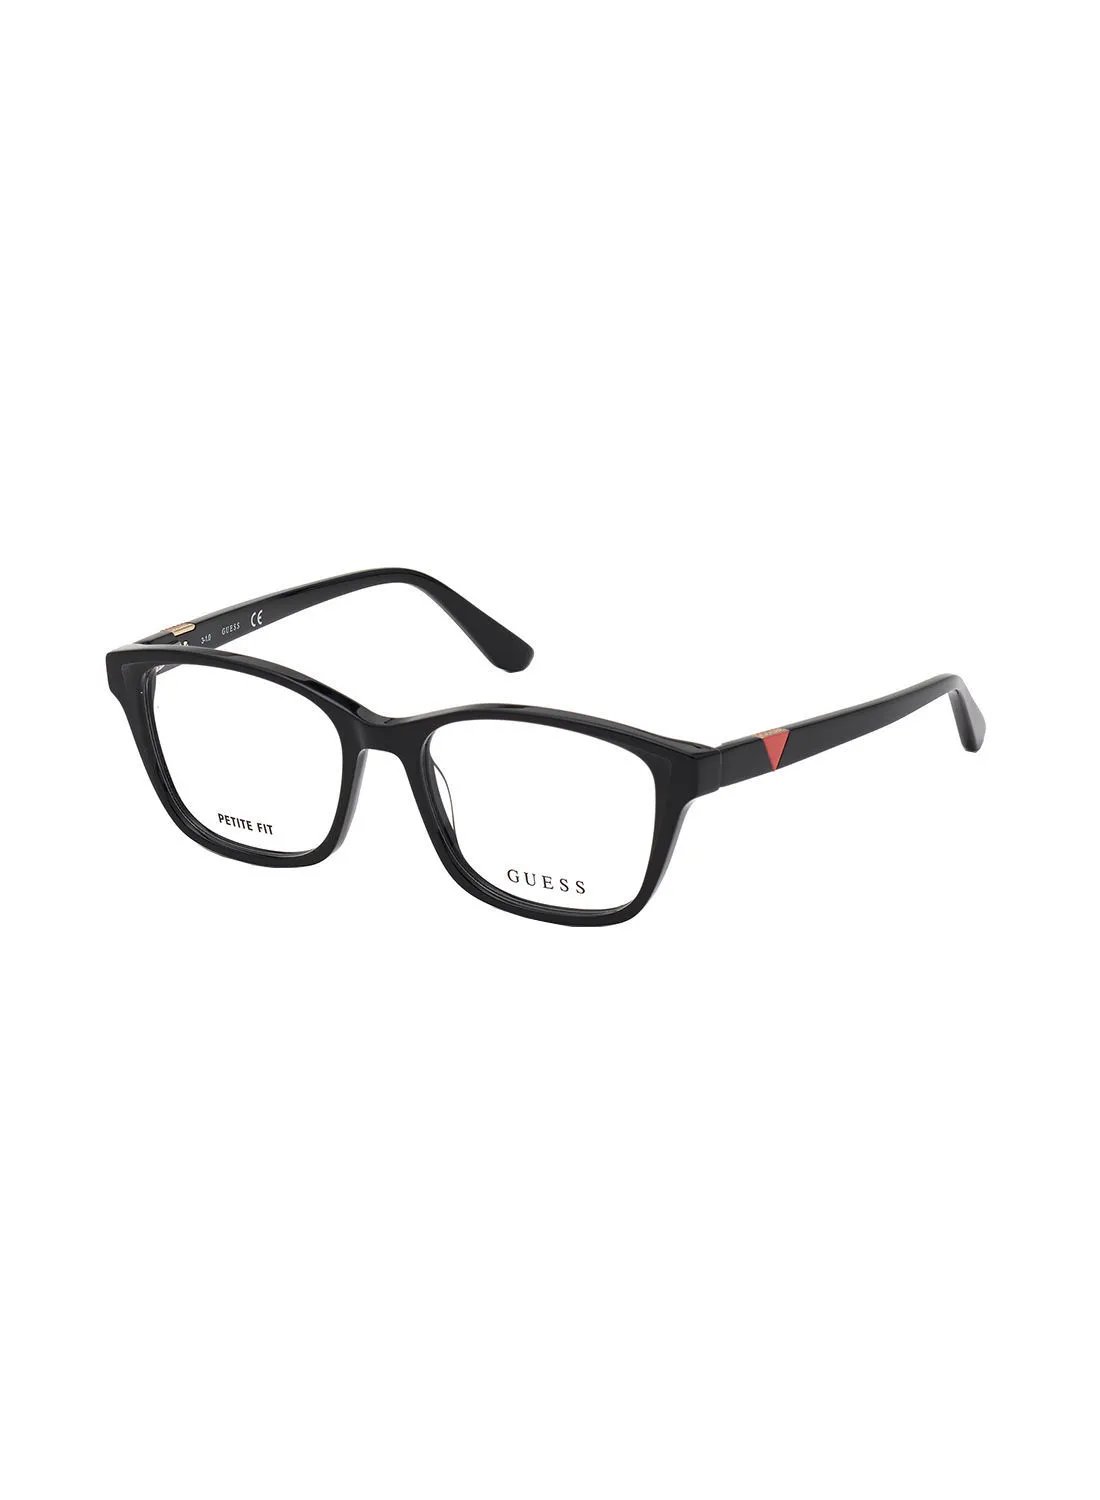 GUESS Square Eyewear Optical Frame GU281000156